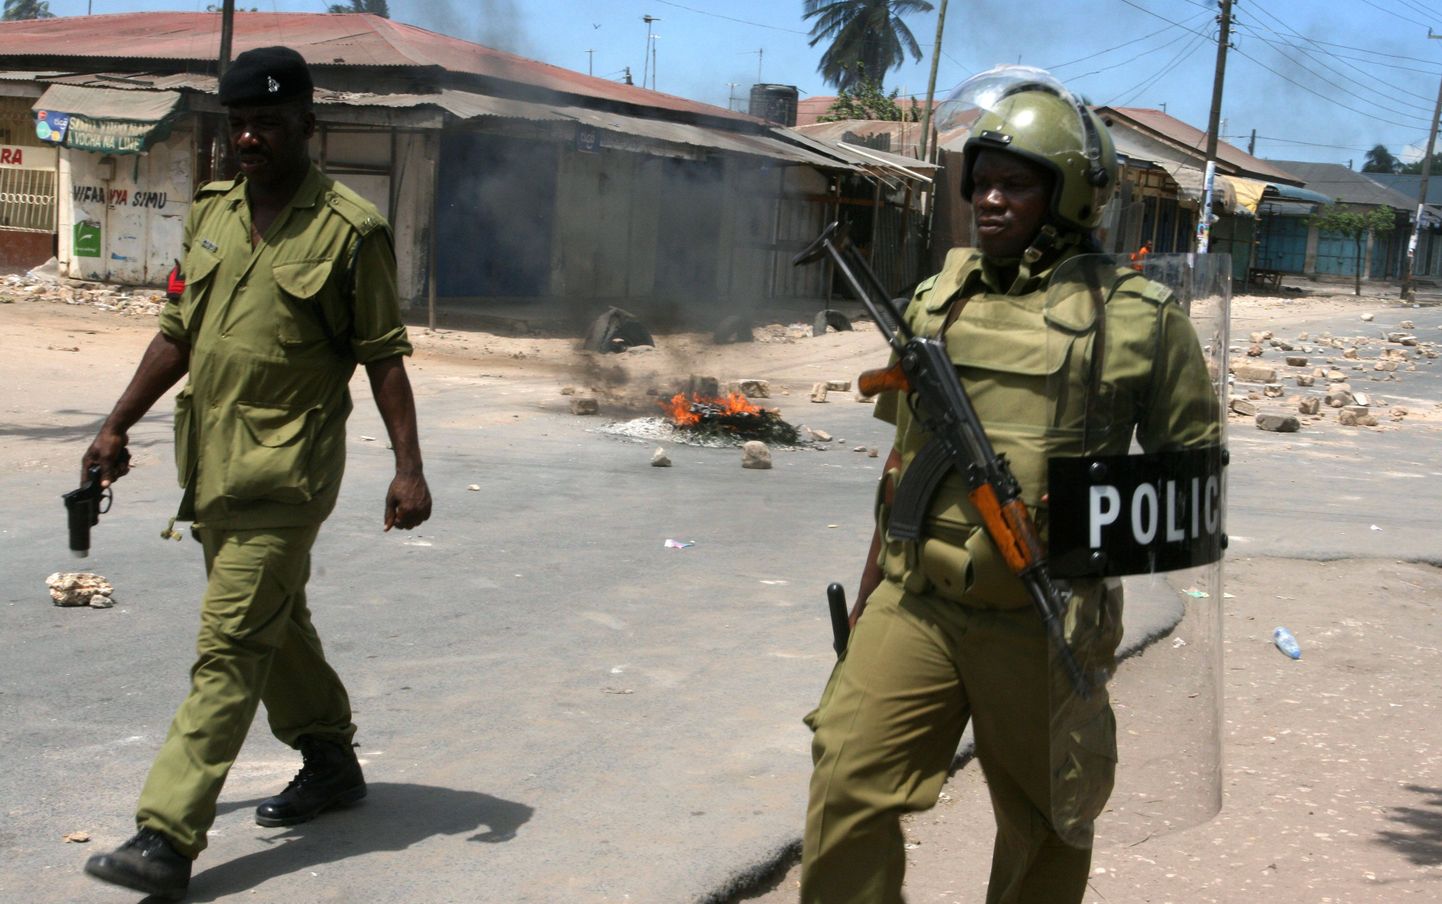 Tansaania märulipolitseinikud Dar es Salaamis mullu hilissügisel, kui olukord riigis oli väga pingeline.